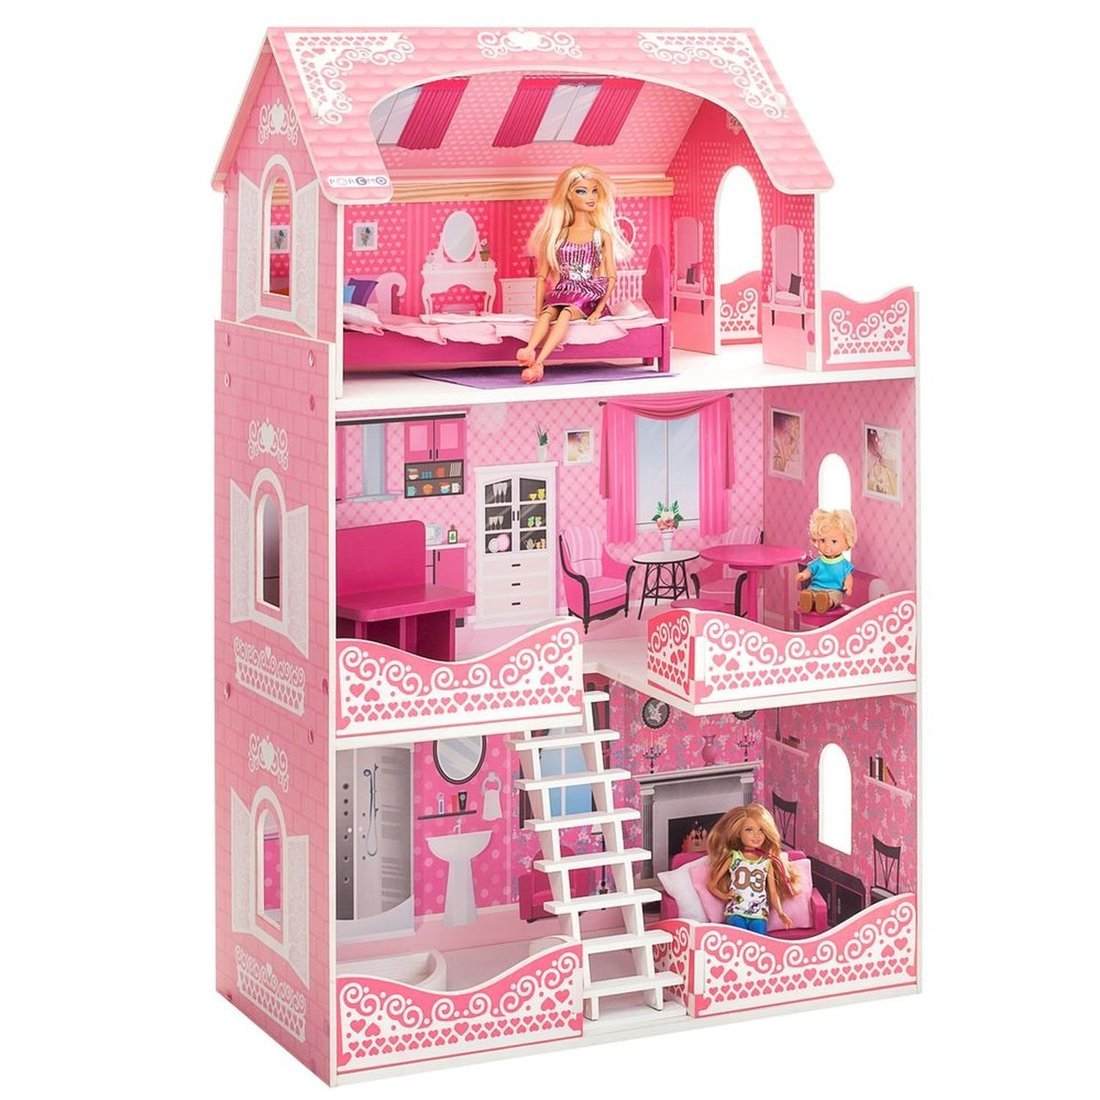 Кукольный домик Розет Шери, для кукол до 30 см (7 предметов мебели и интерьера) (Вид 1)